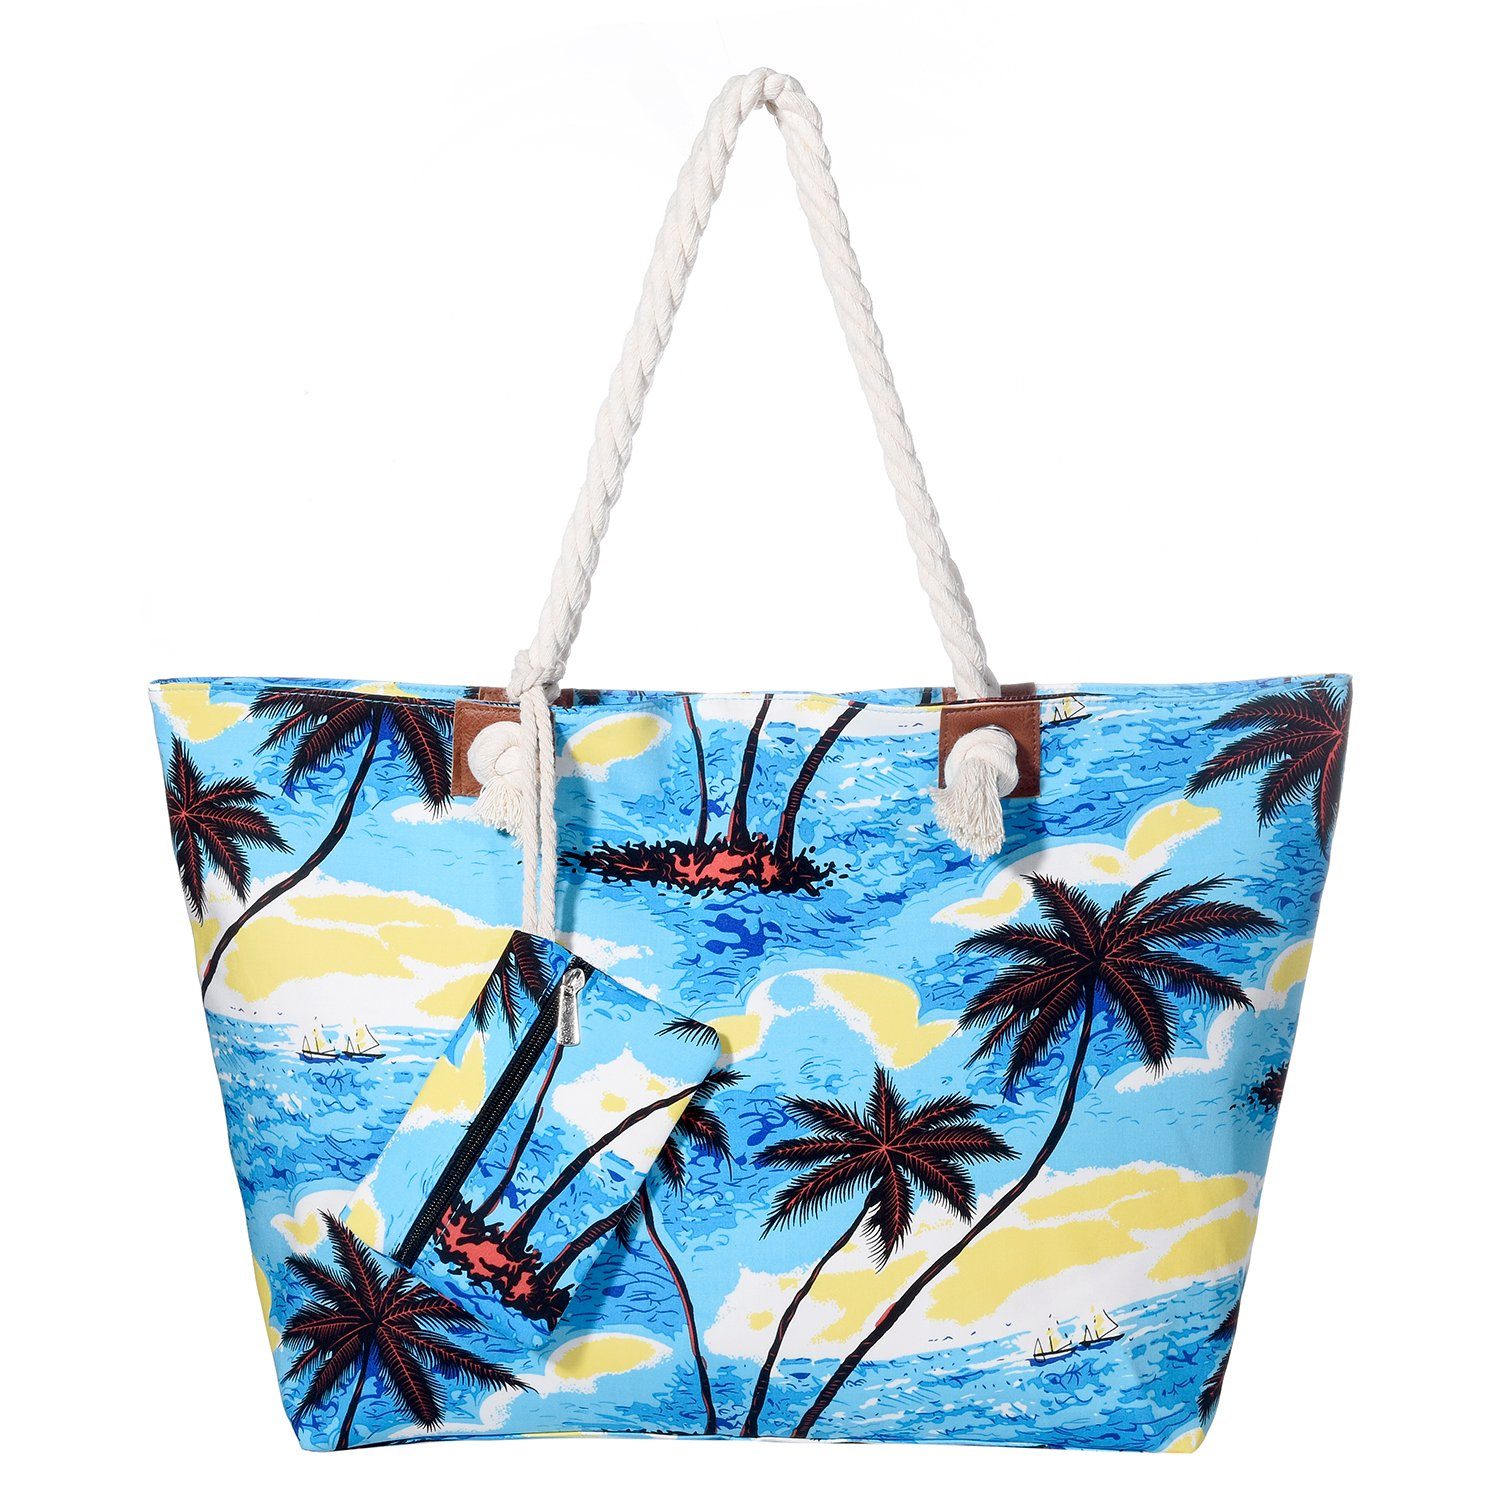 Shopper Beach Reißverschluss, inkl. Strandtasche, Tasche DonDon mit Große Beutel kleinem life (2-tlg), Strandtasche wasserabweisende